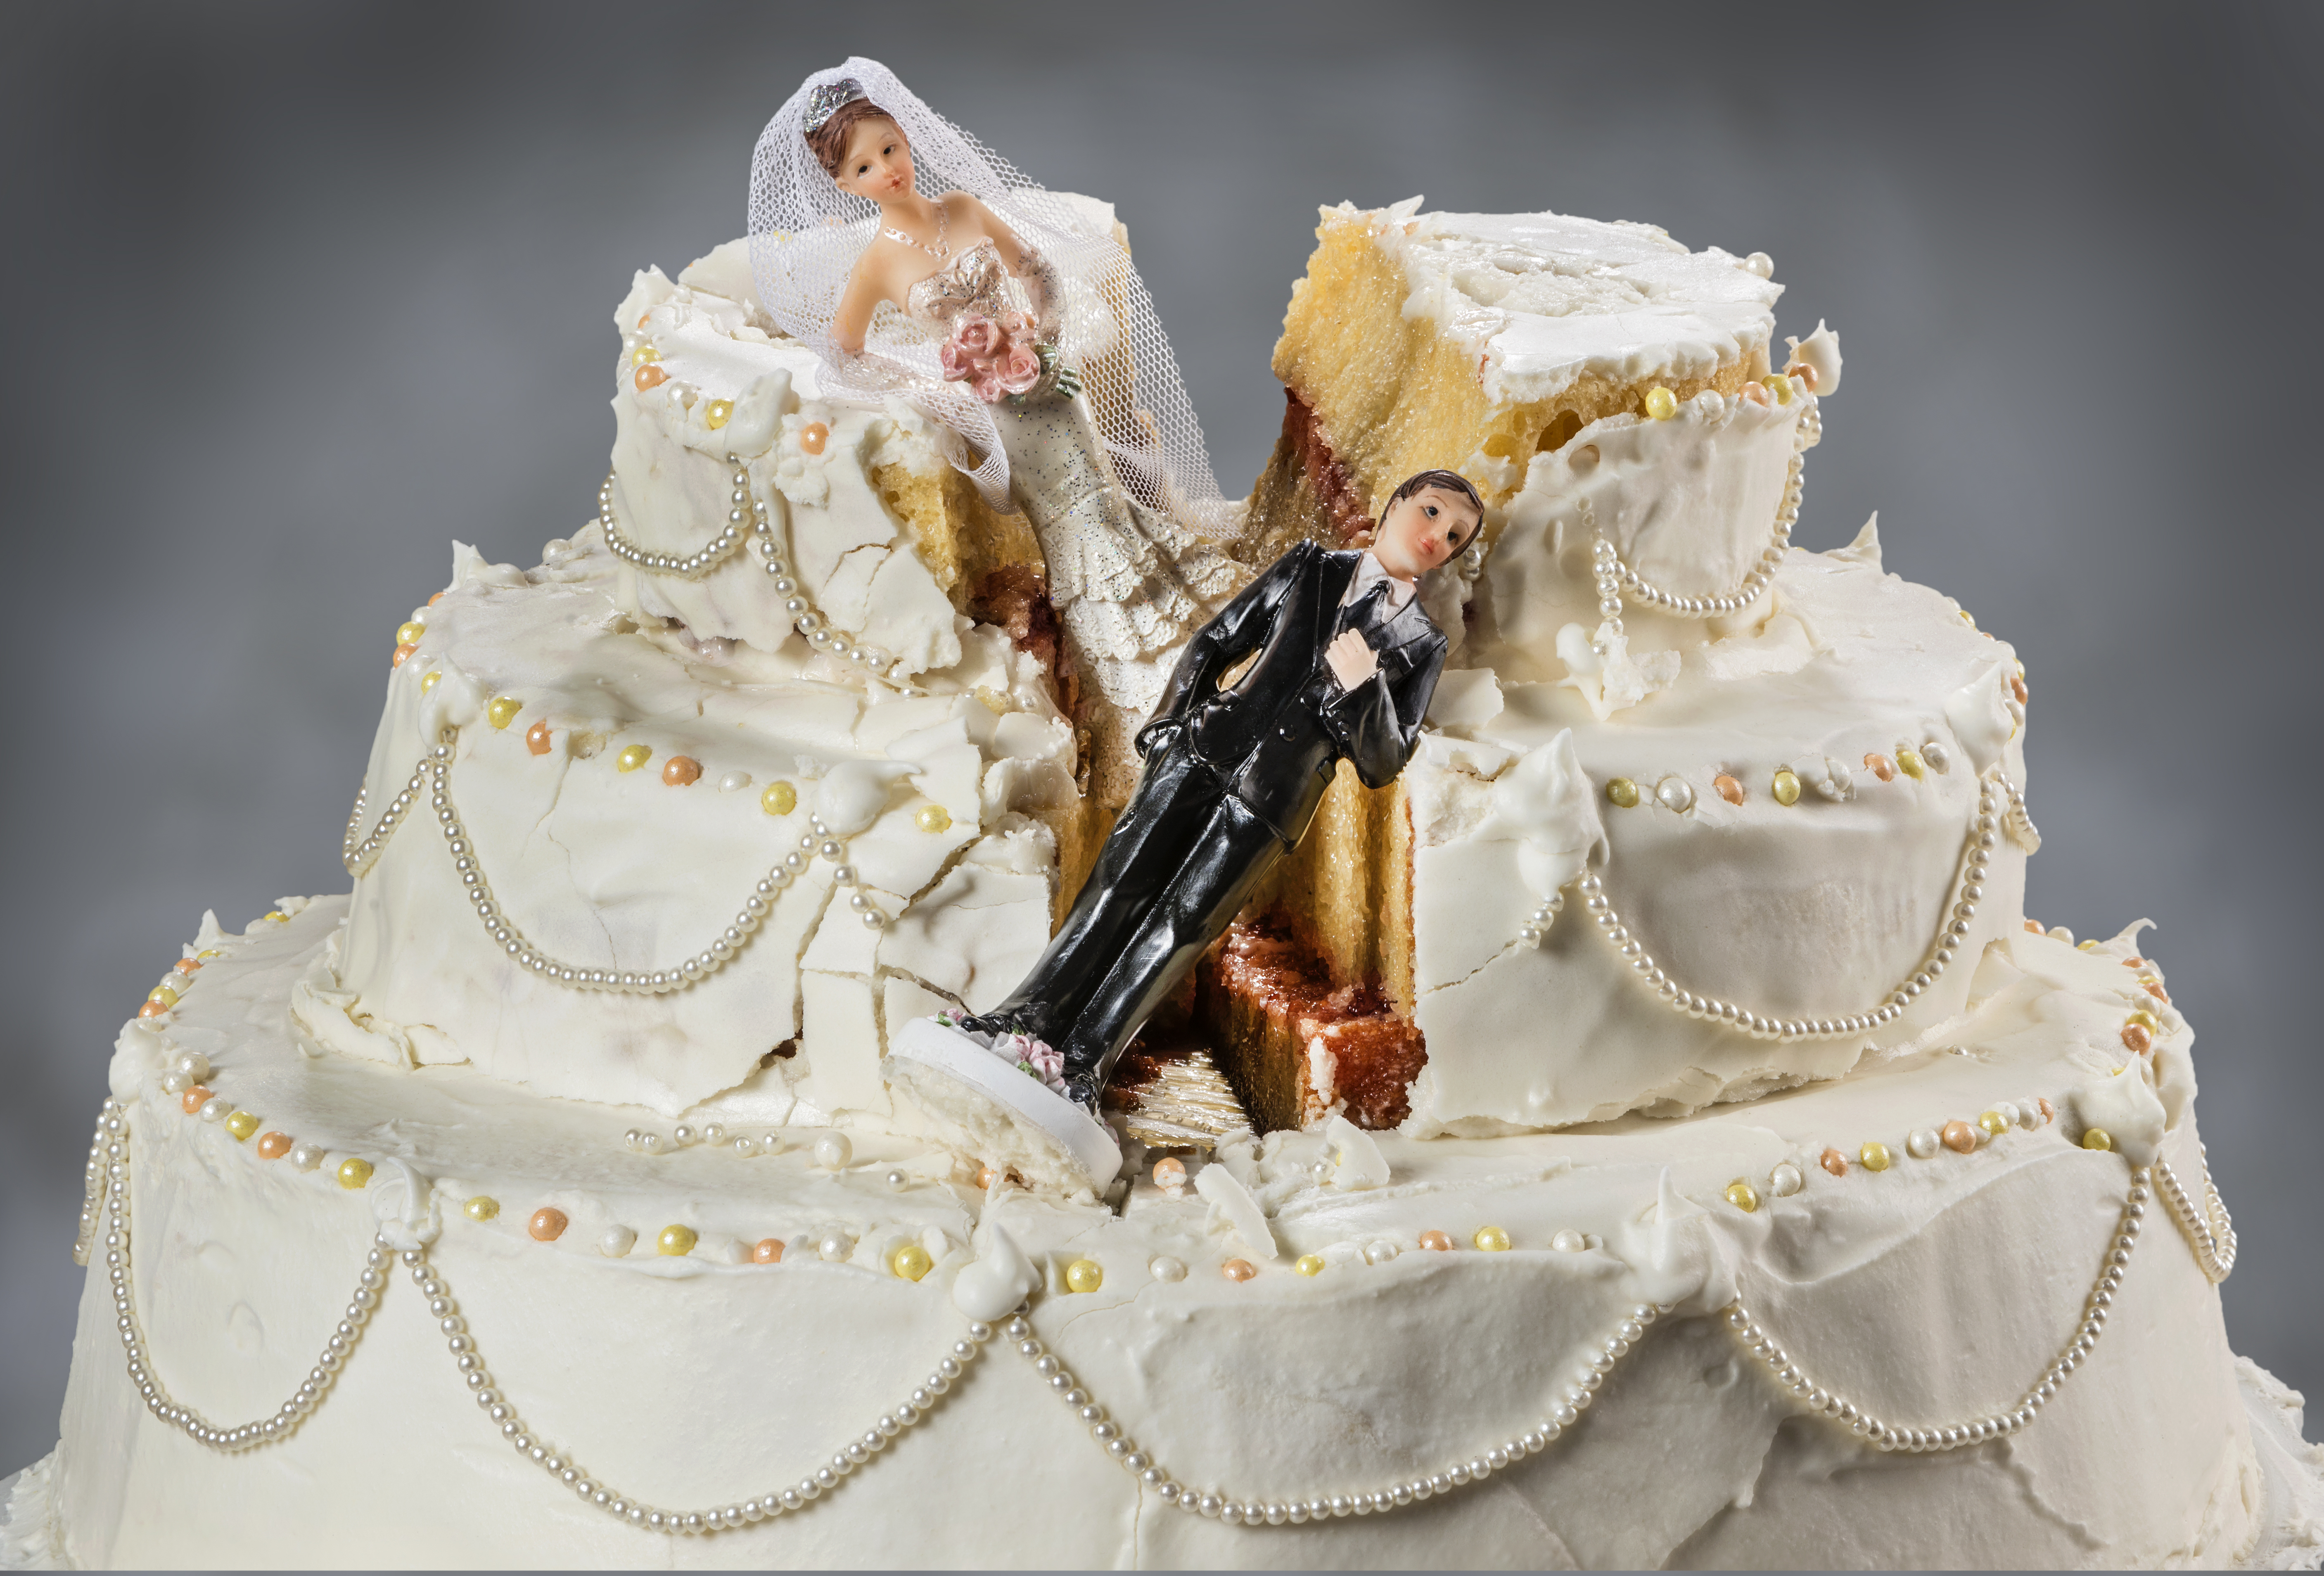 Une photo d'un gâteau de mariage en ruine. | Shutterstock/Leon Raphael